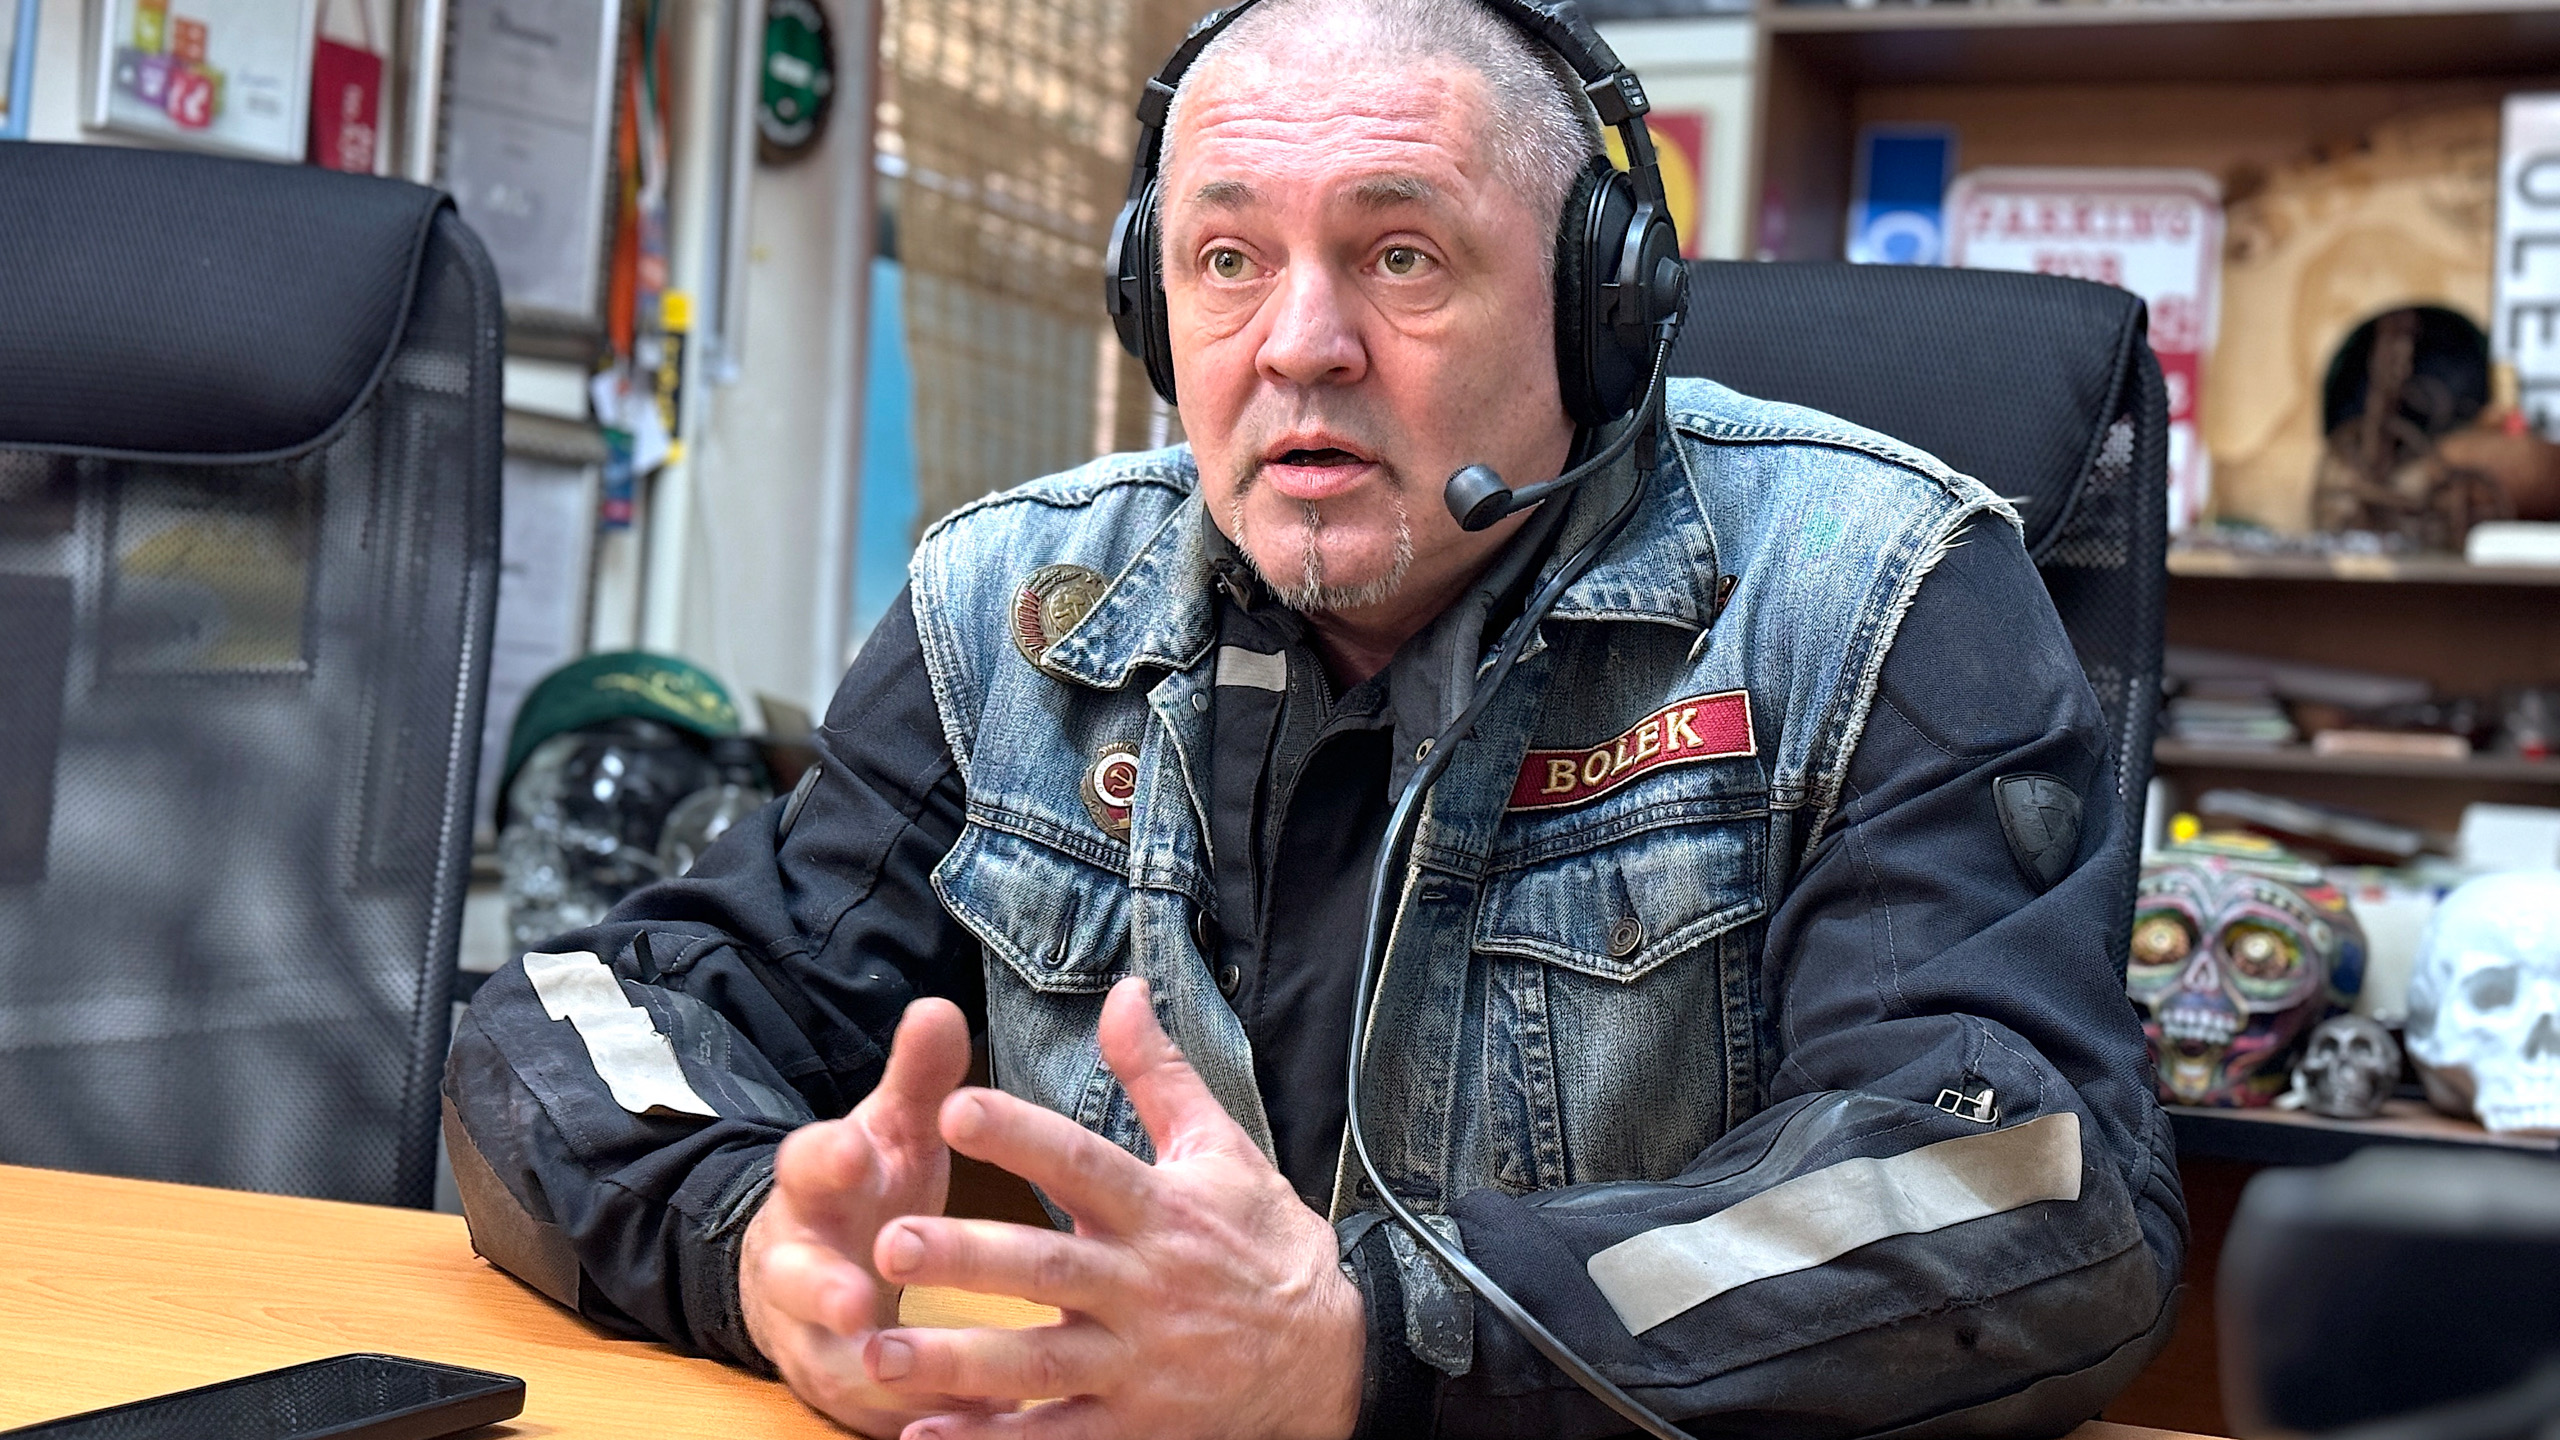 Зачем люди становятся мотоциклистами? Обсуждаем этот вопрос с мотоциклистом Борисом Князевым.